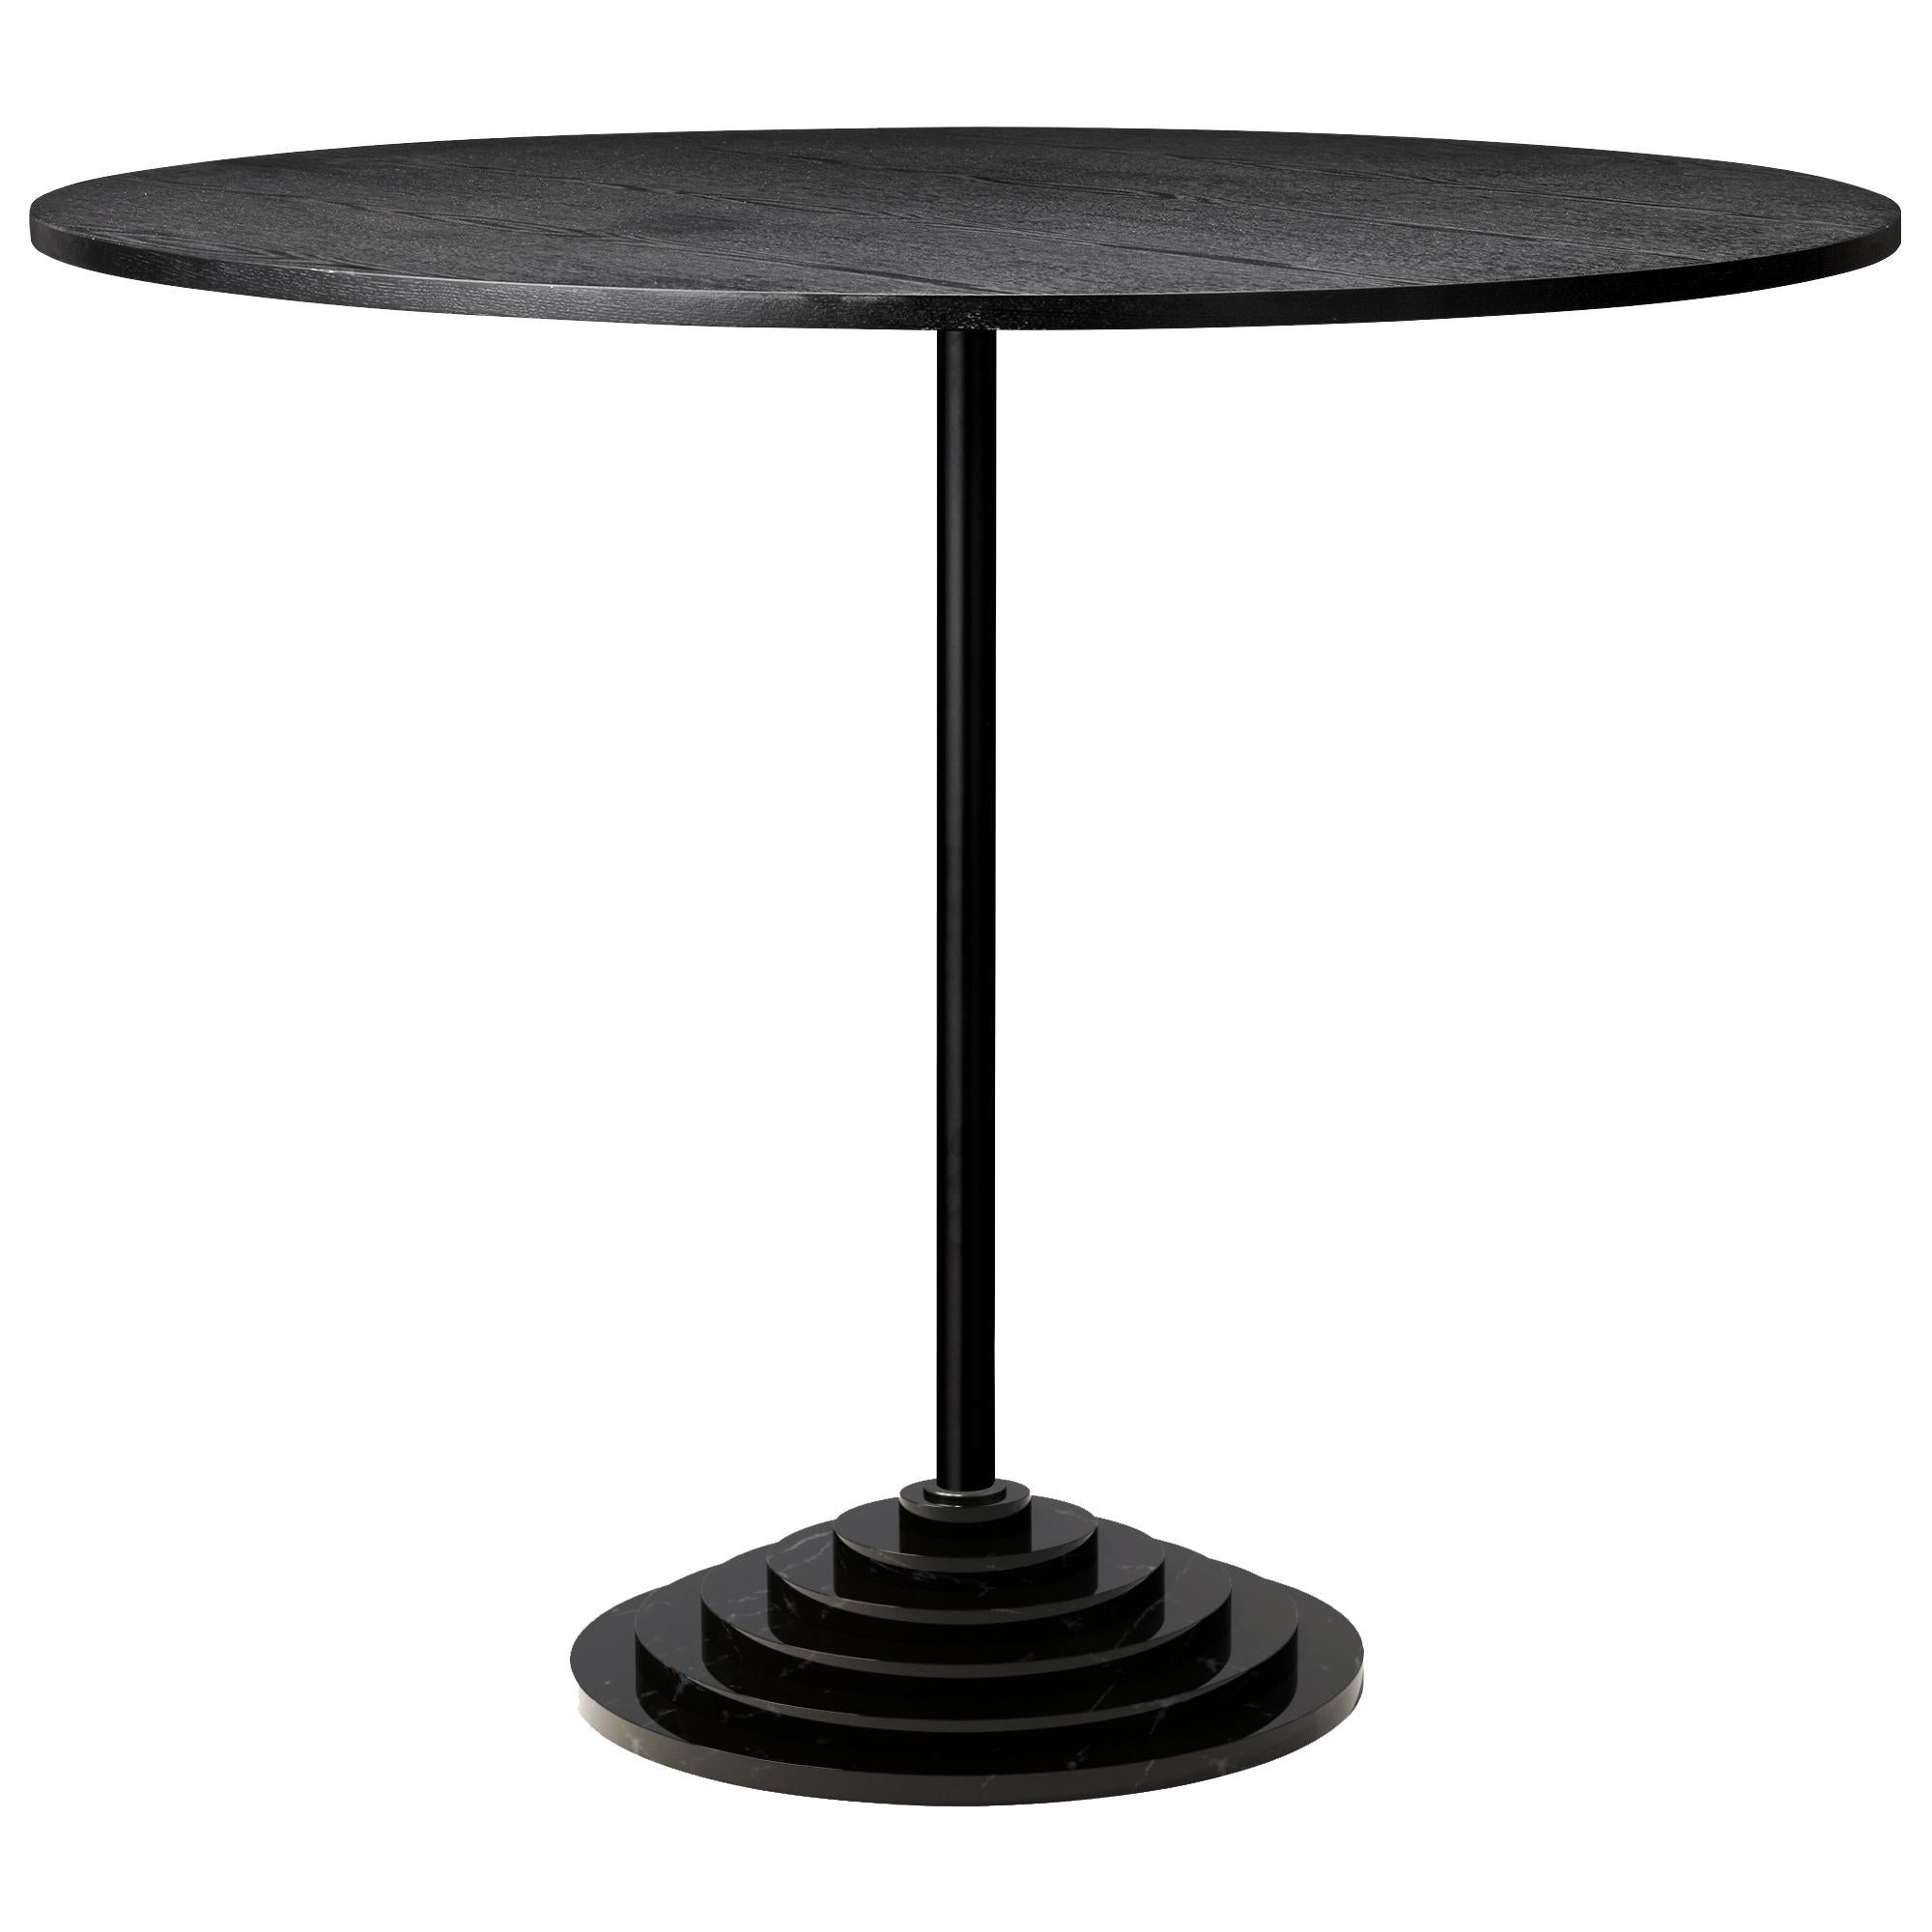 Beistelltisch mit schwarzem Marmorsockel 
Abmessungen: Ø90 x H74 CM
MATERIALIEN: Stahlrahmen, Marmorsockel, Furnier

Eleganter Tisch mit einem Sockel aus schwerem Marmor, der ein einzigartiges Aussehen schafft.